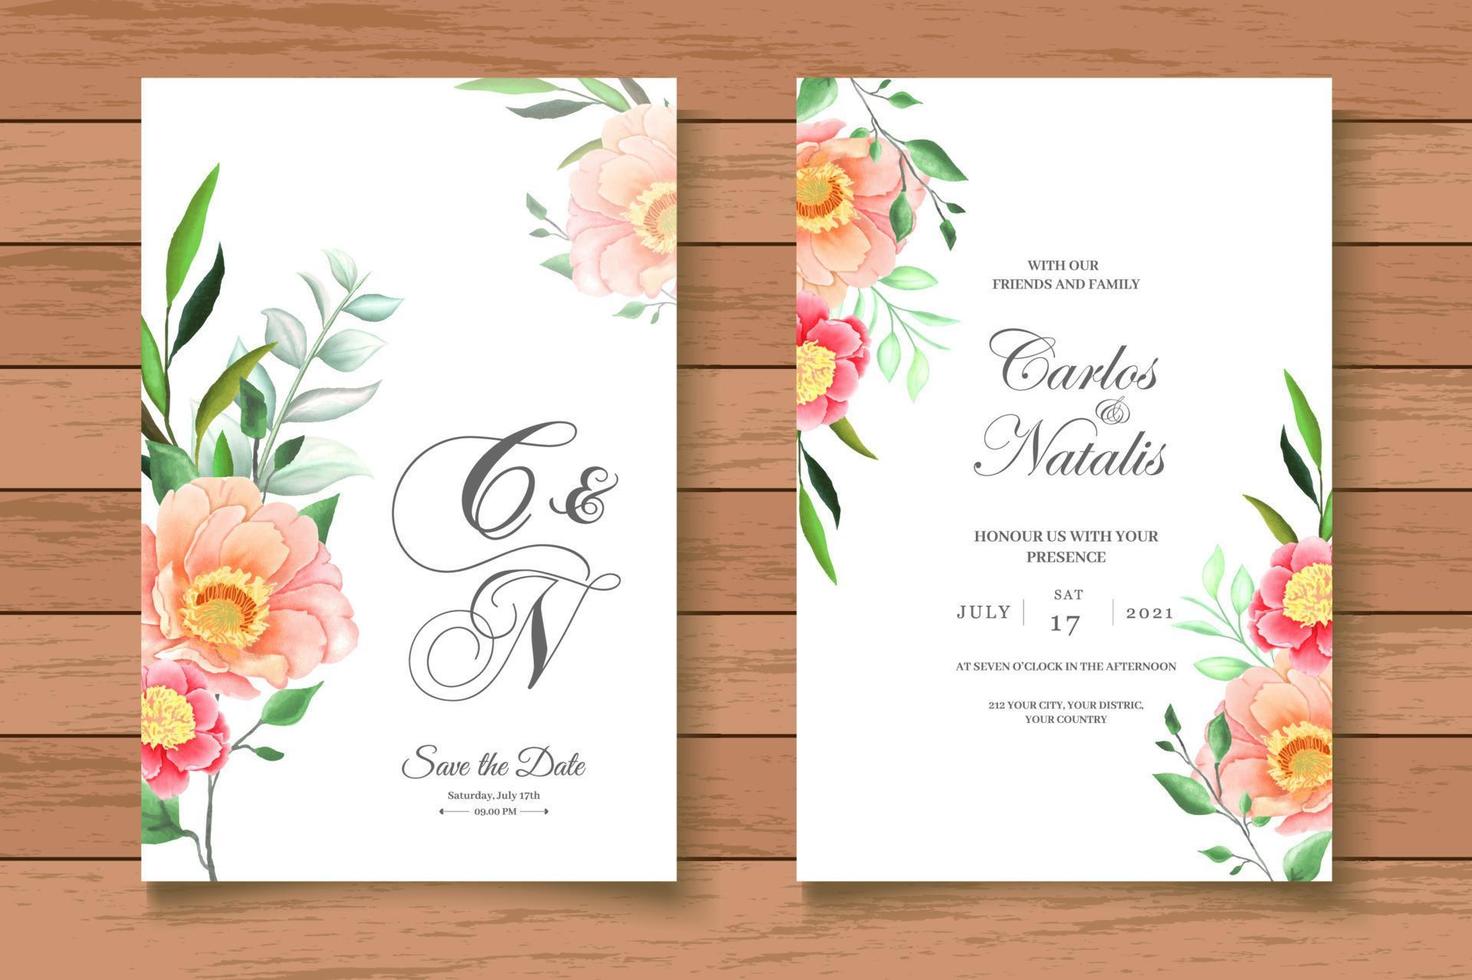 vacker akvarell blommig bröllop inbjudningskort set vektor